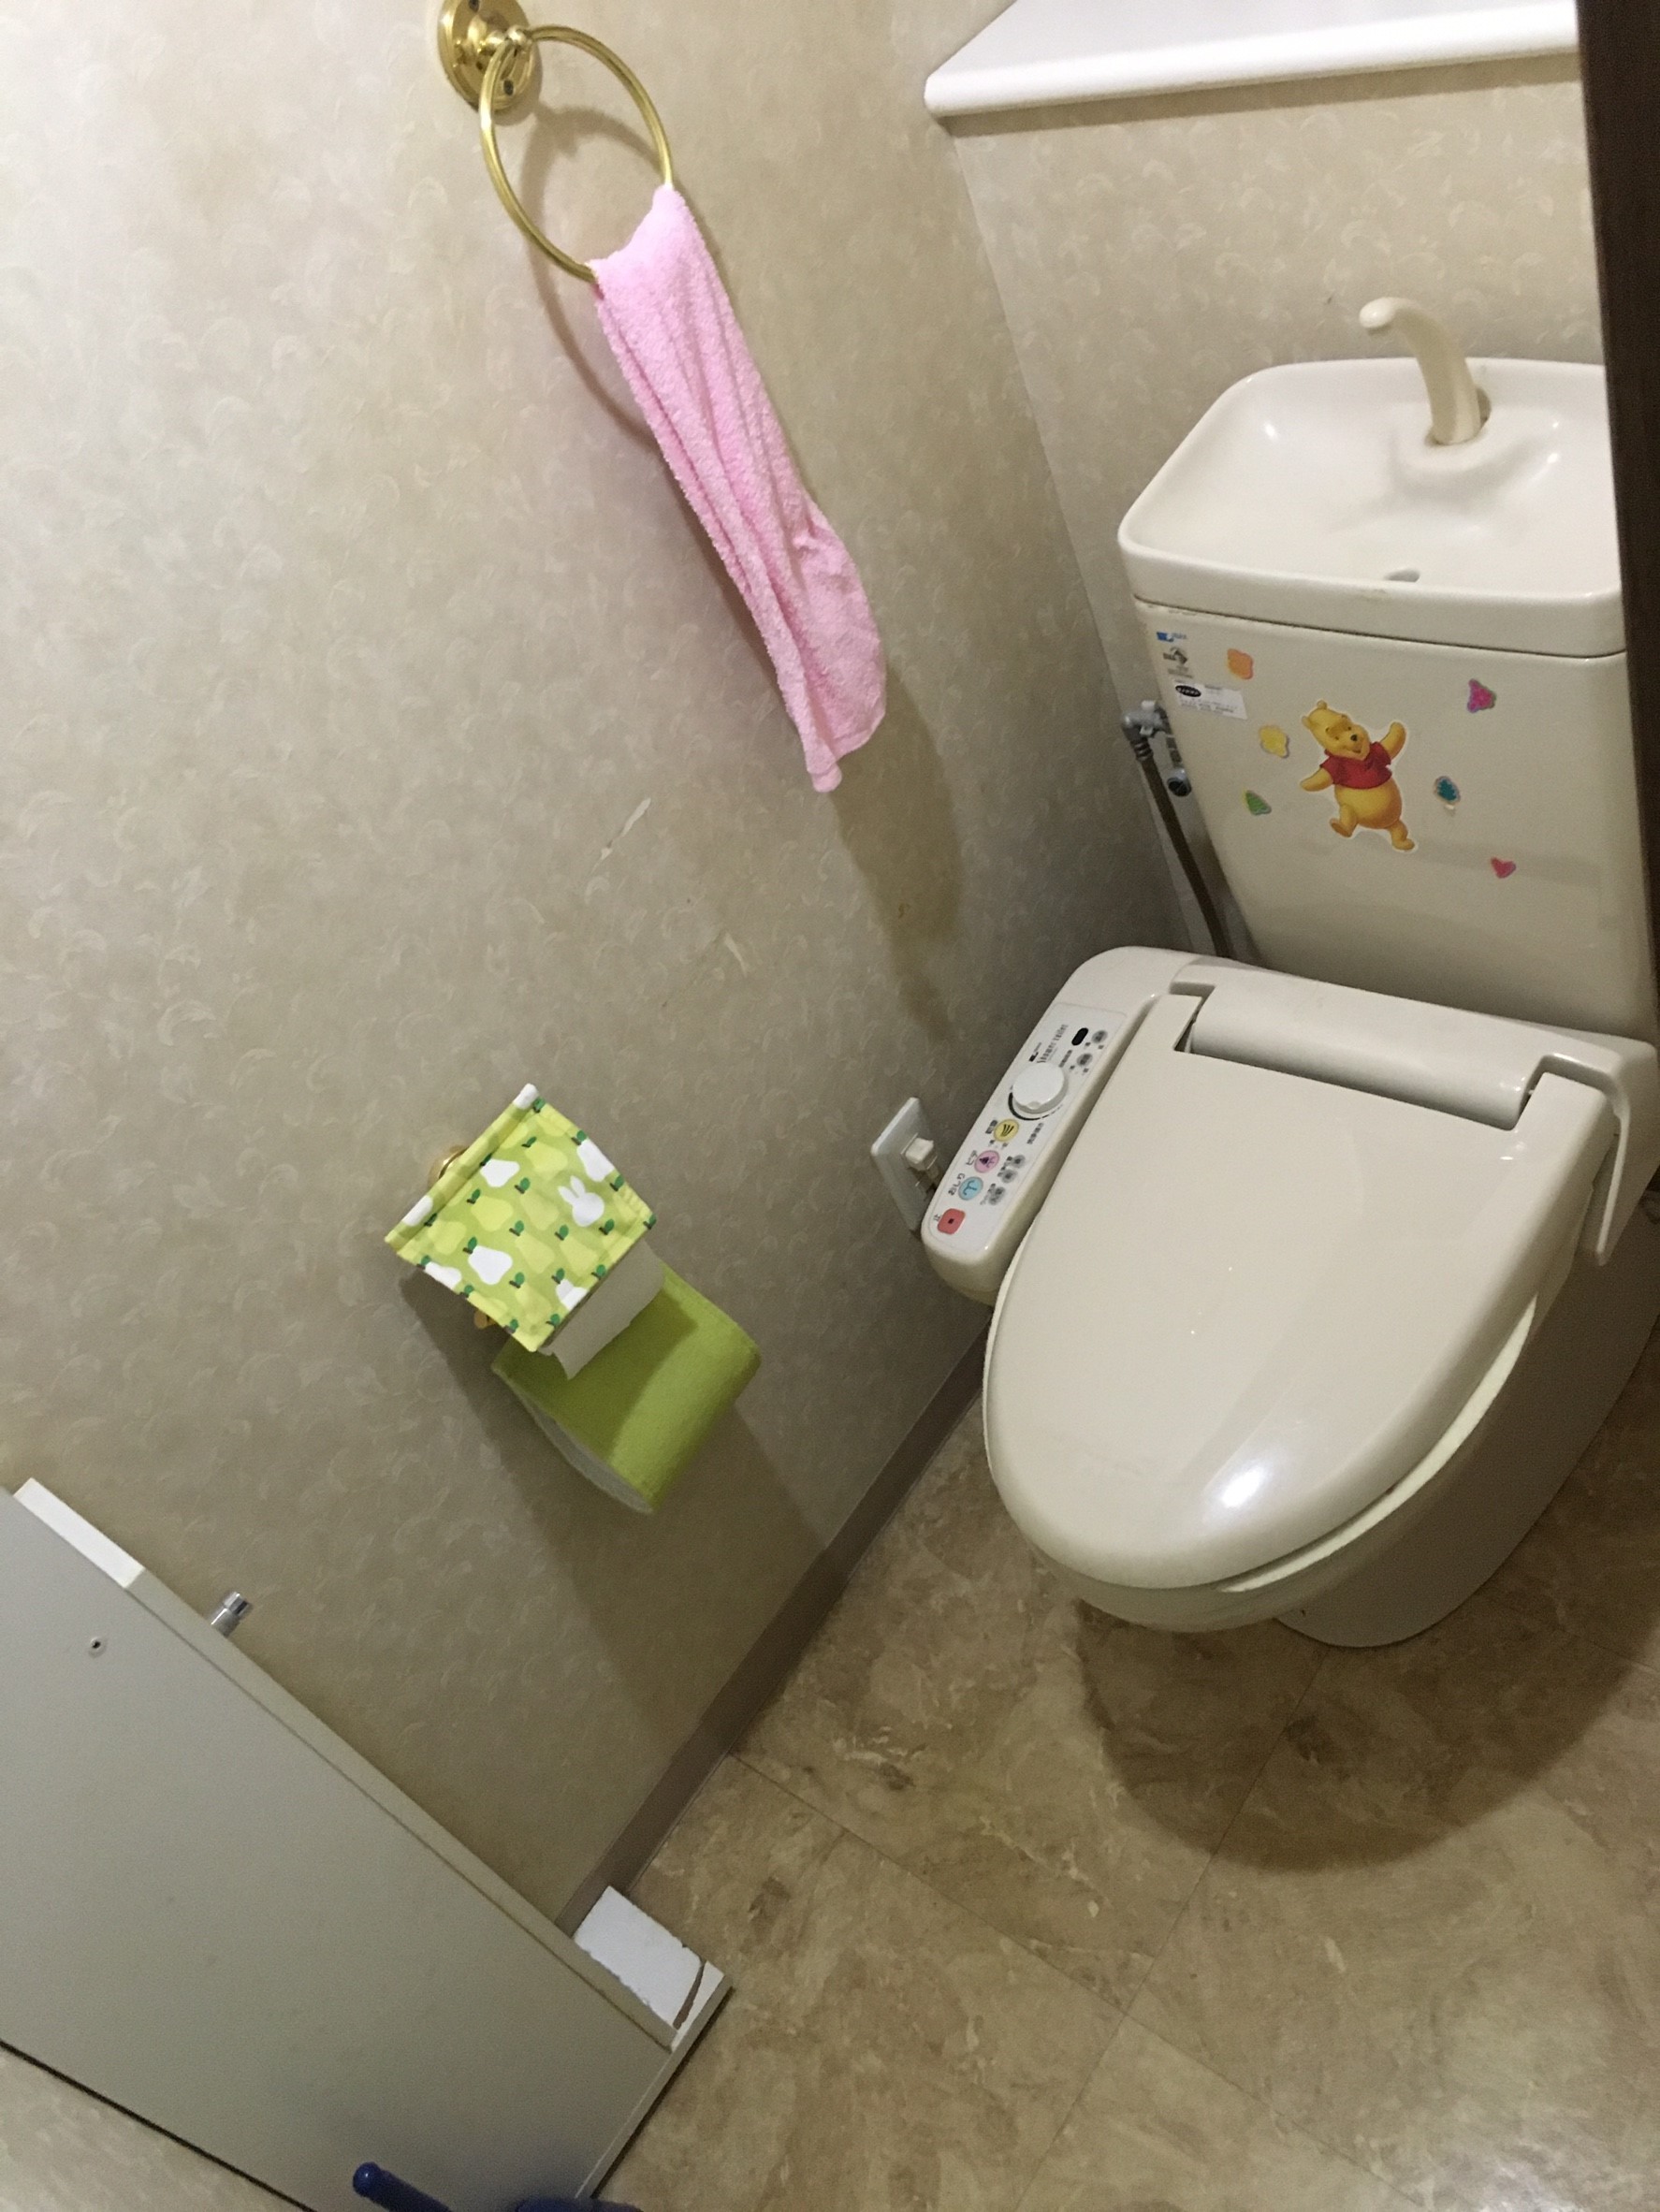 品川区 TOTO トイレ交換 リフォーム 街のリフォームメーカー